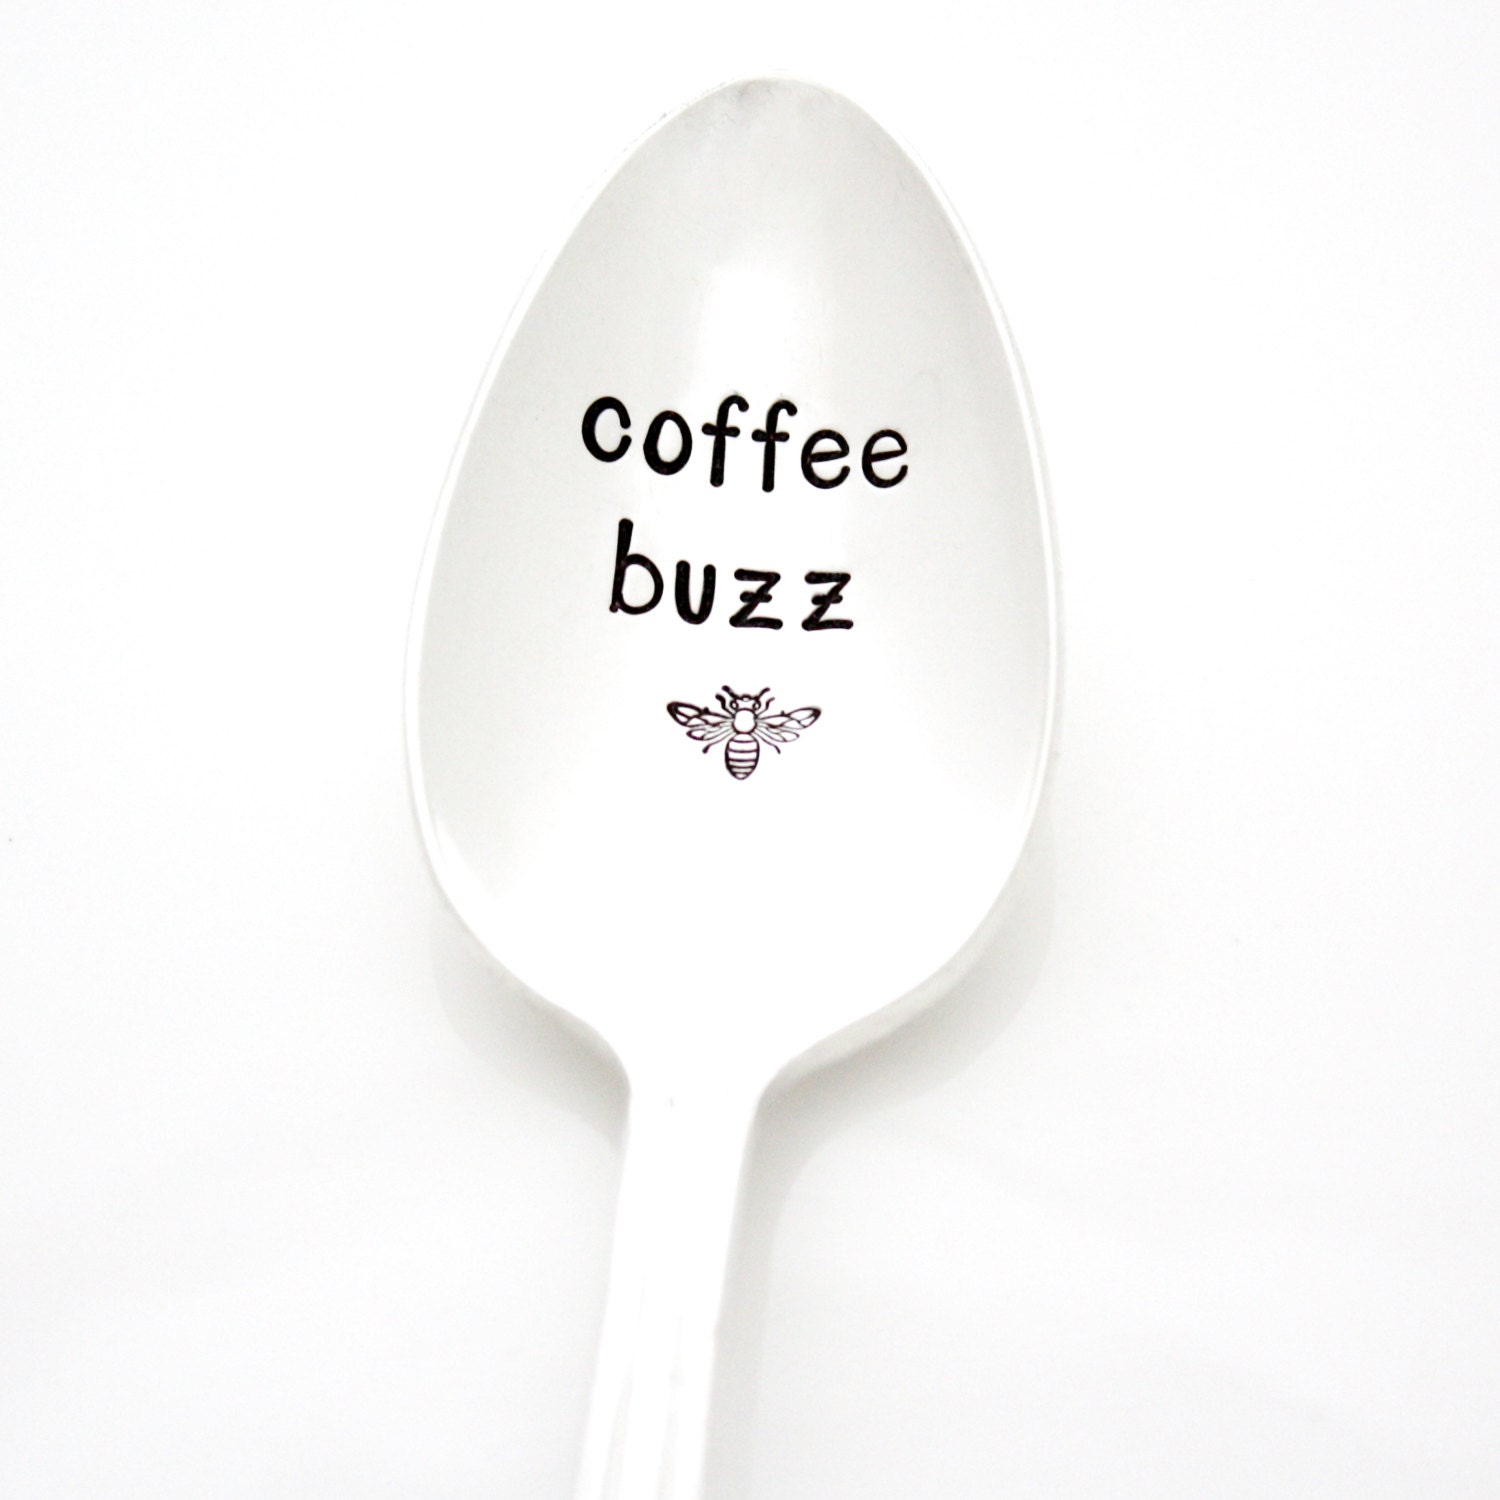 coffee buzz nicole